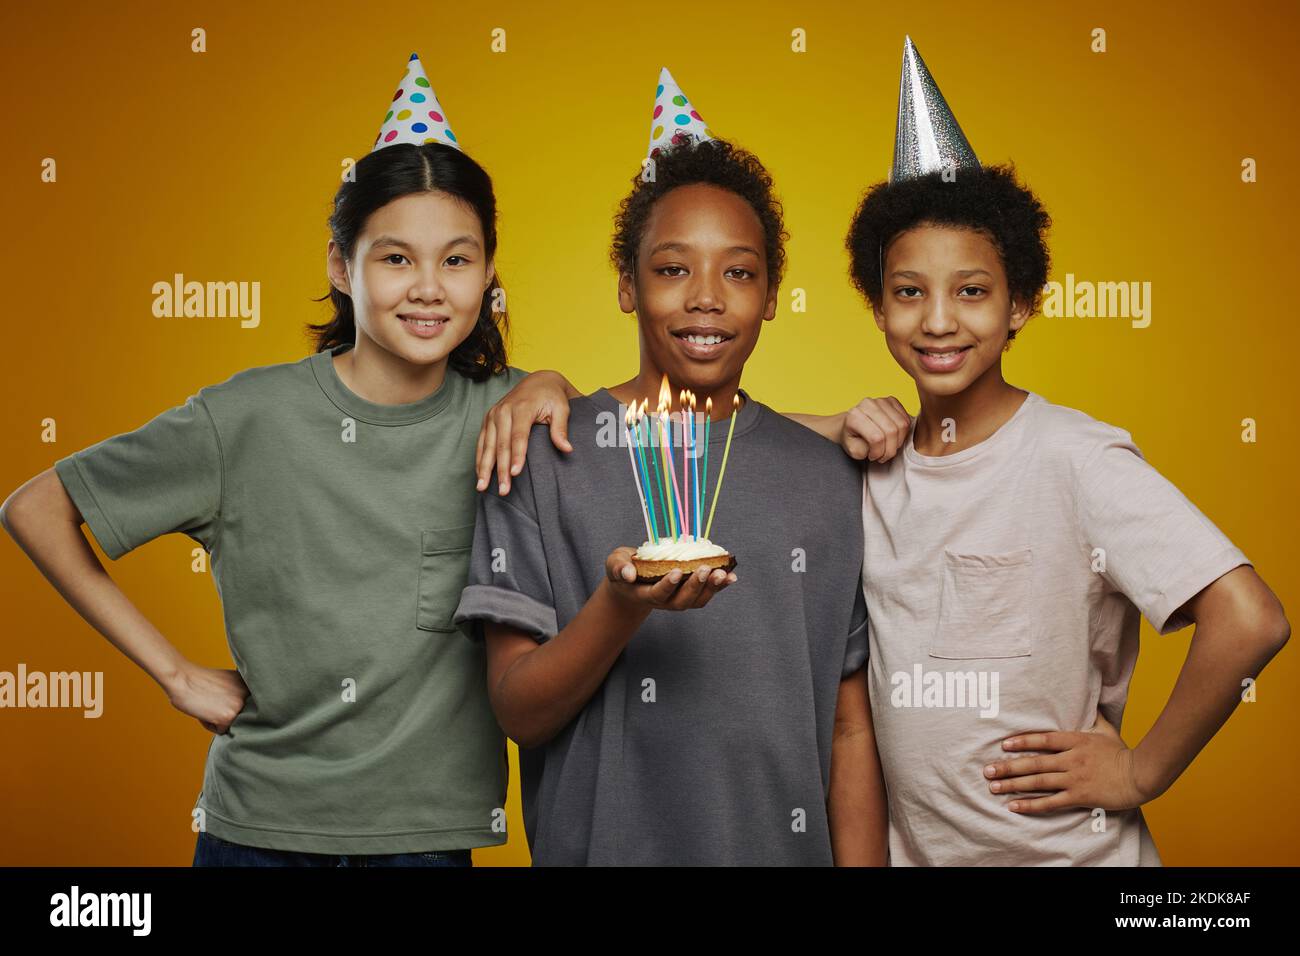 Drei Jugendliche multikulturelle Freunde in Geburtstagsmützen und Casualwear stehen vor der Kamera, während Junge Kuchen mit Kerzen hält Stockfoto